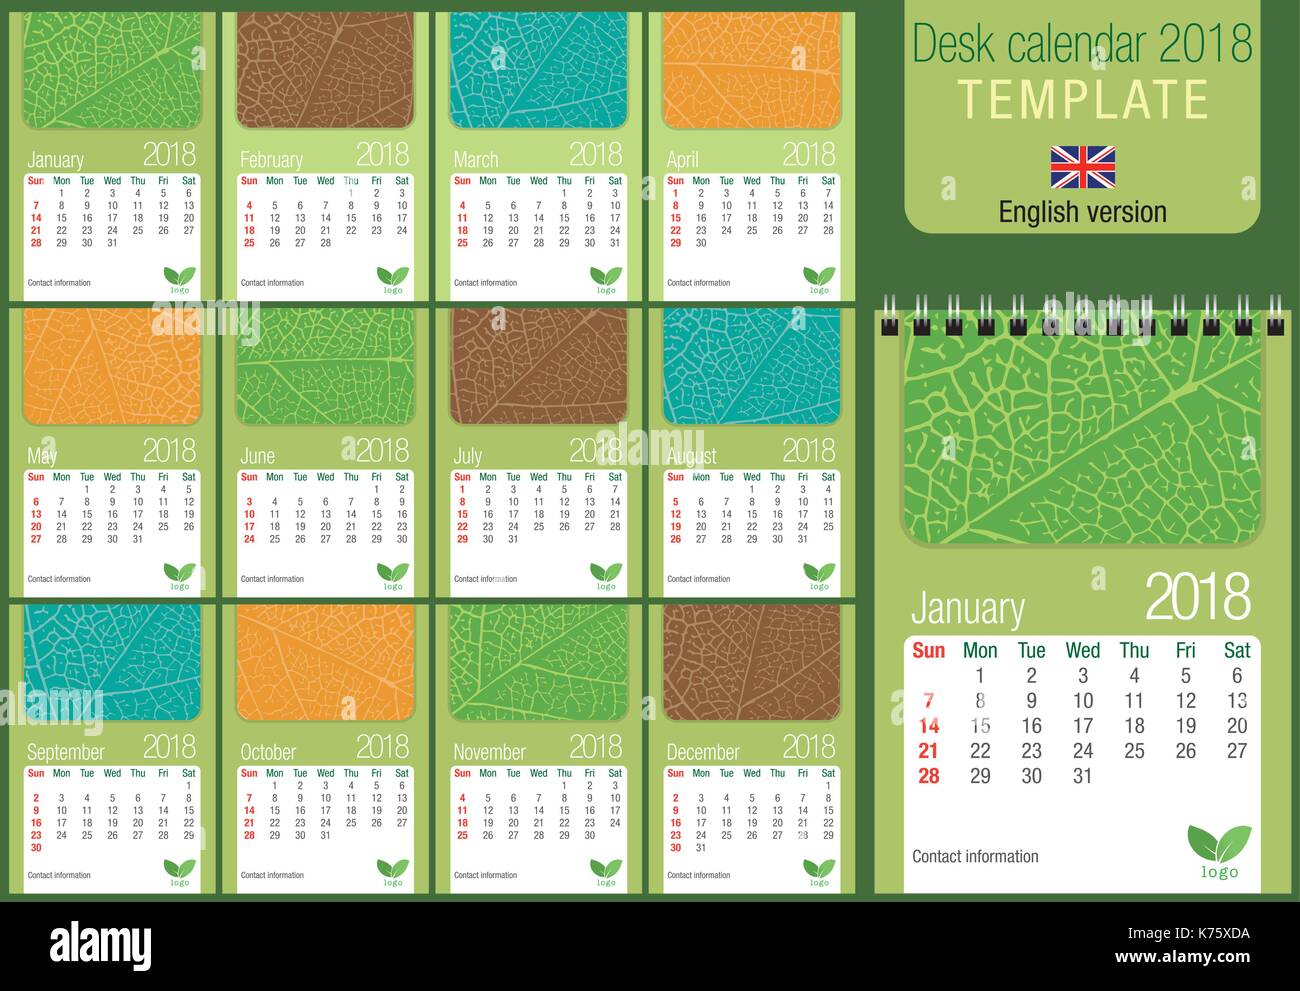 Utile scrivania calendario 2018 modello con texture foglia su sfondo verde. Dimensioni: 150 mm x 210 mm. Formato A5 verticale. Versione inglese Illustrazione Vettoriale